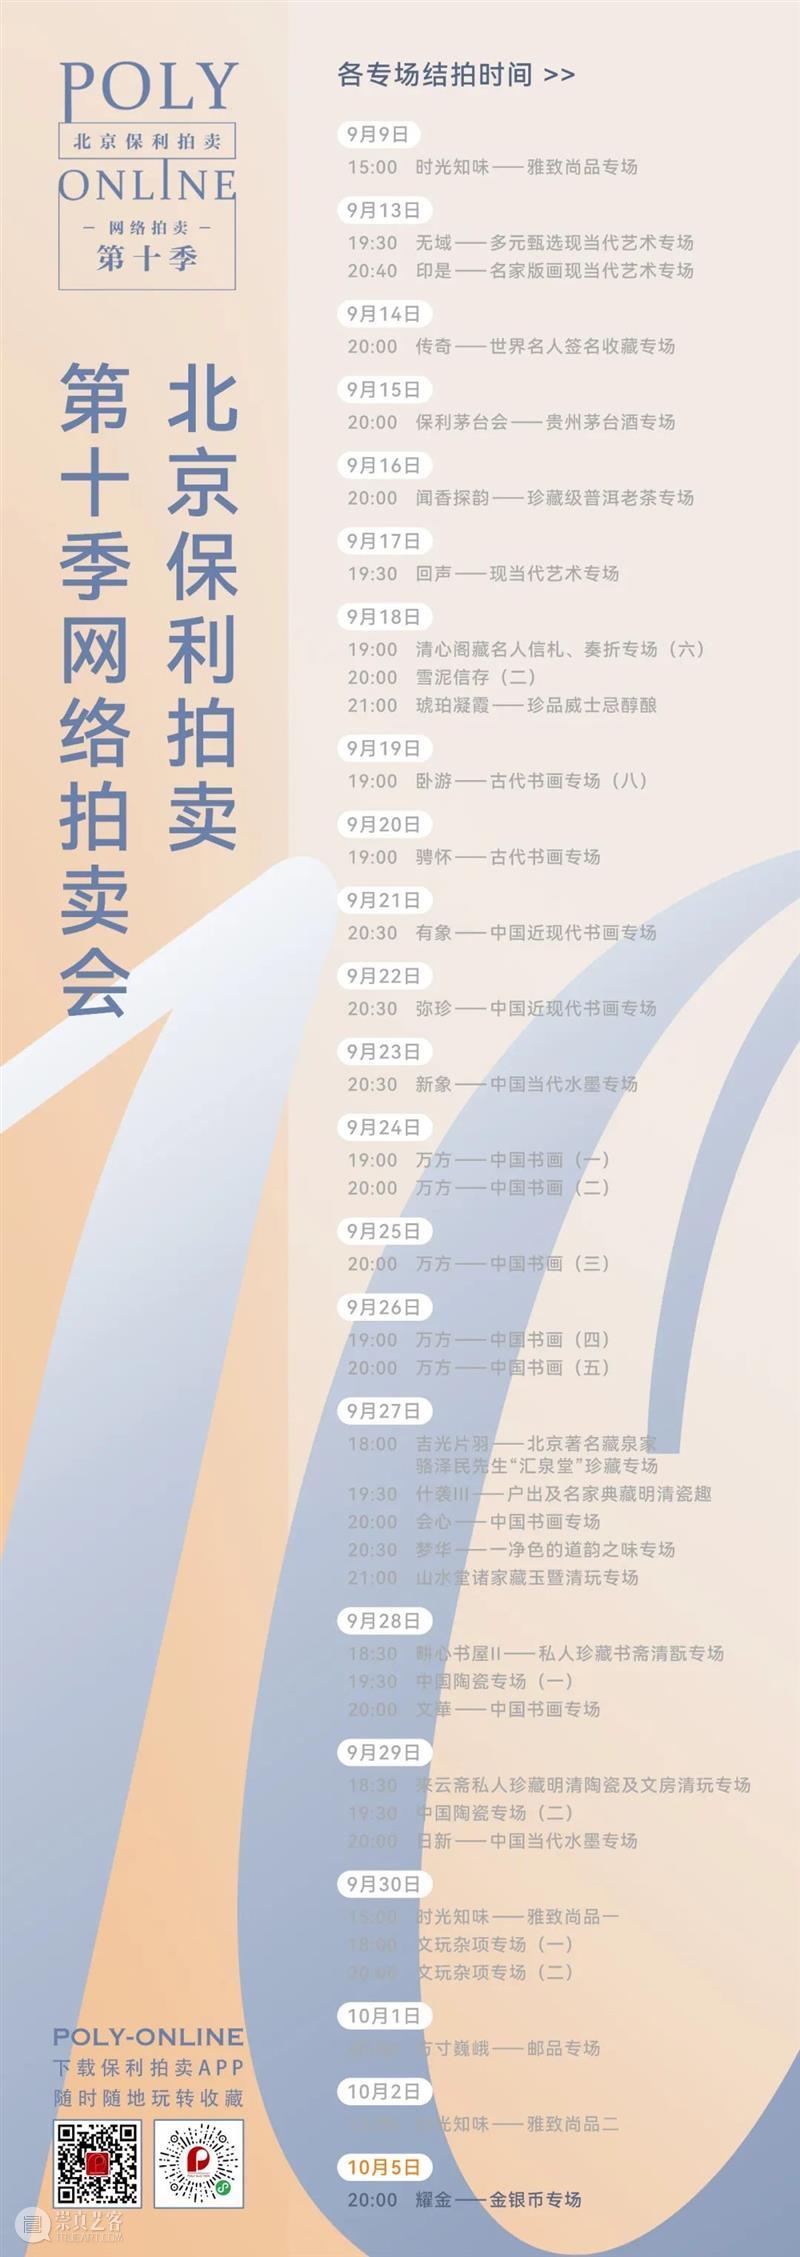 北京保利拍卖丨北美征集温哥华站10月5日开启 崇真艺客